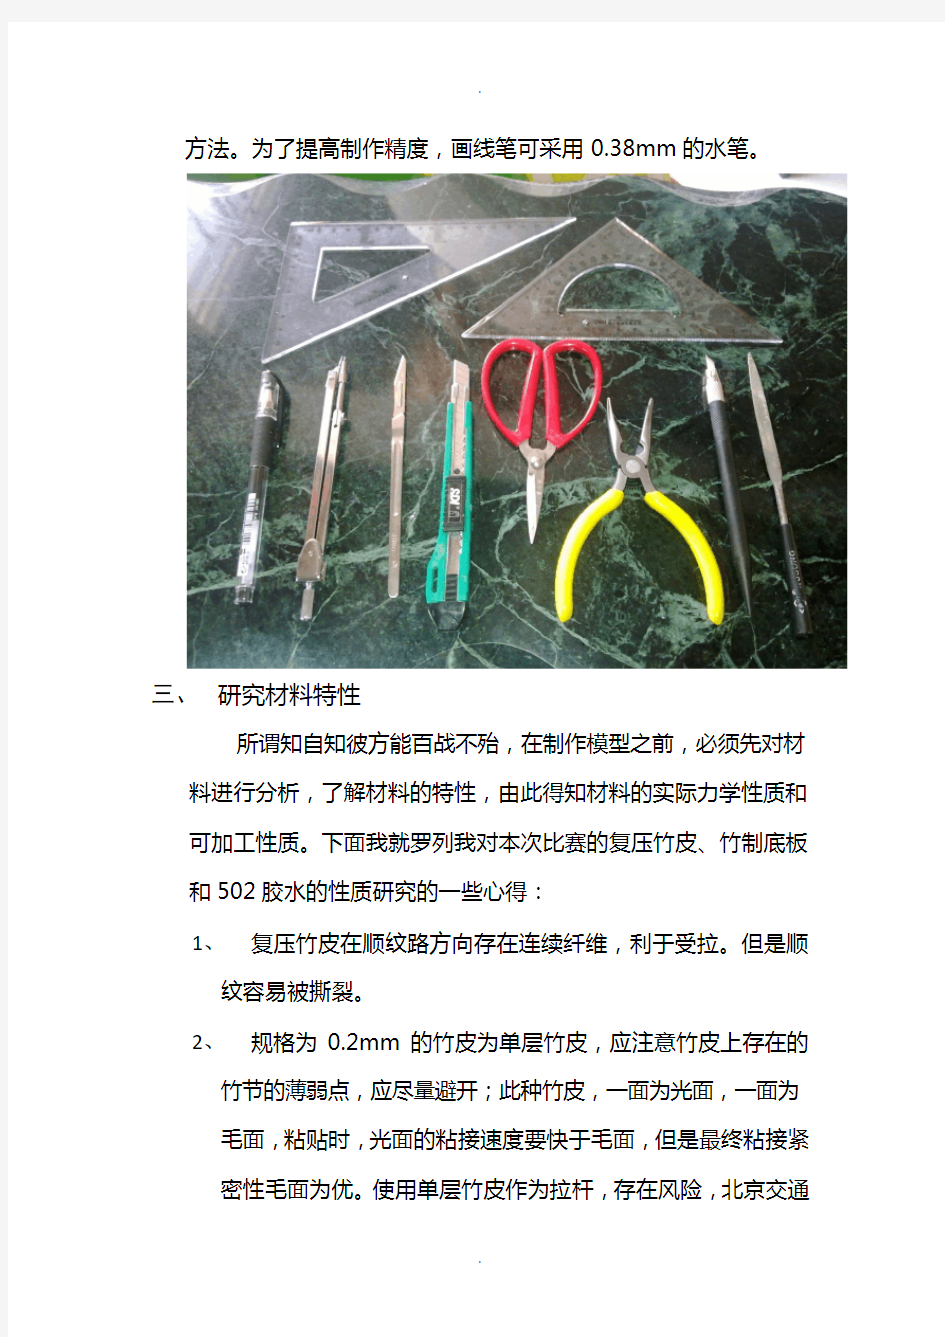 黄祖慰-第五届全国大学生结构设计竞赛总结(技术版)